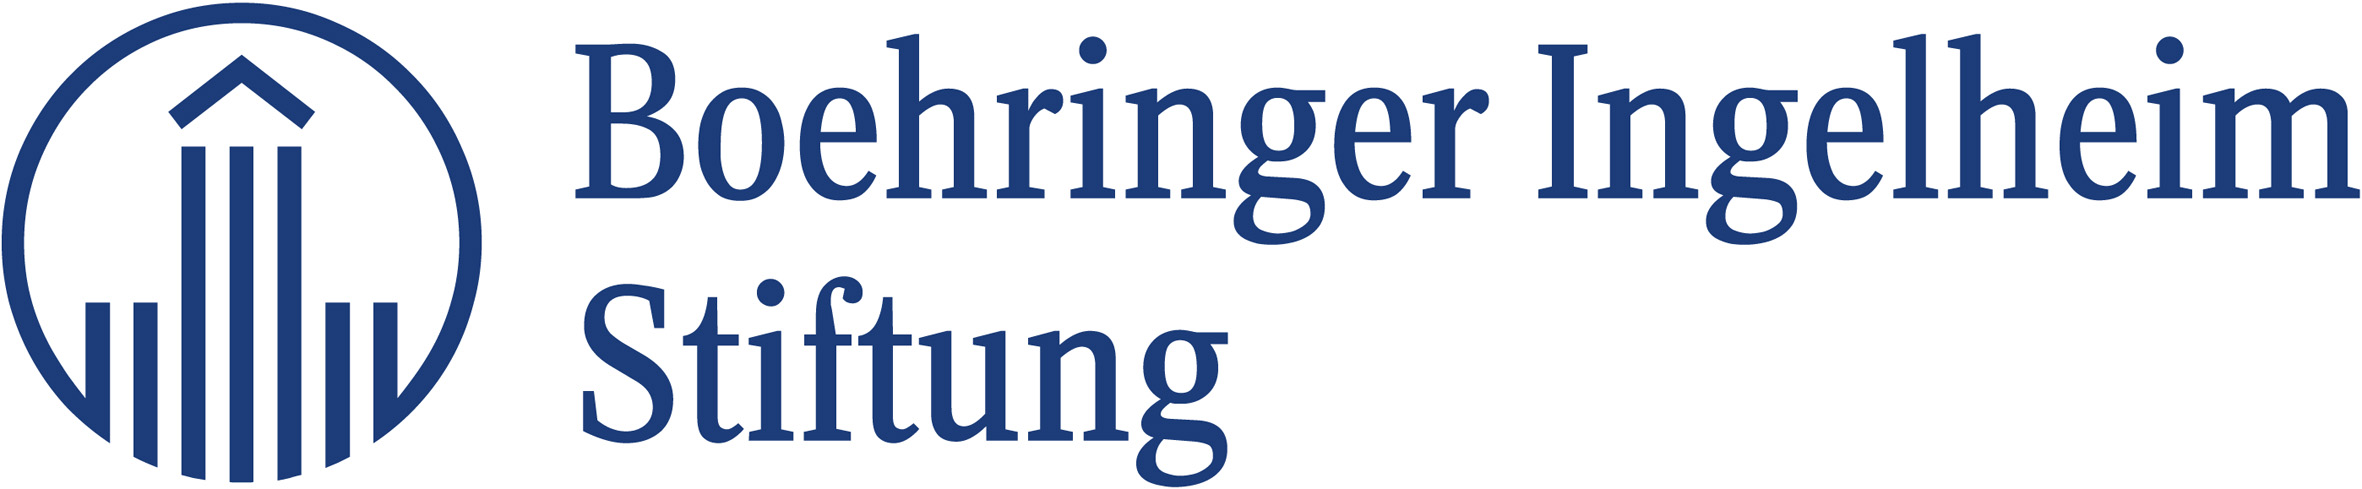 2019-02/boehringer-ingelheim-stiftung.jpg